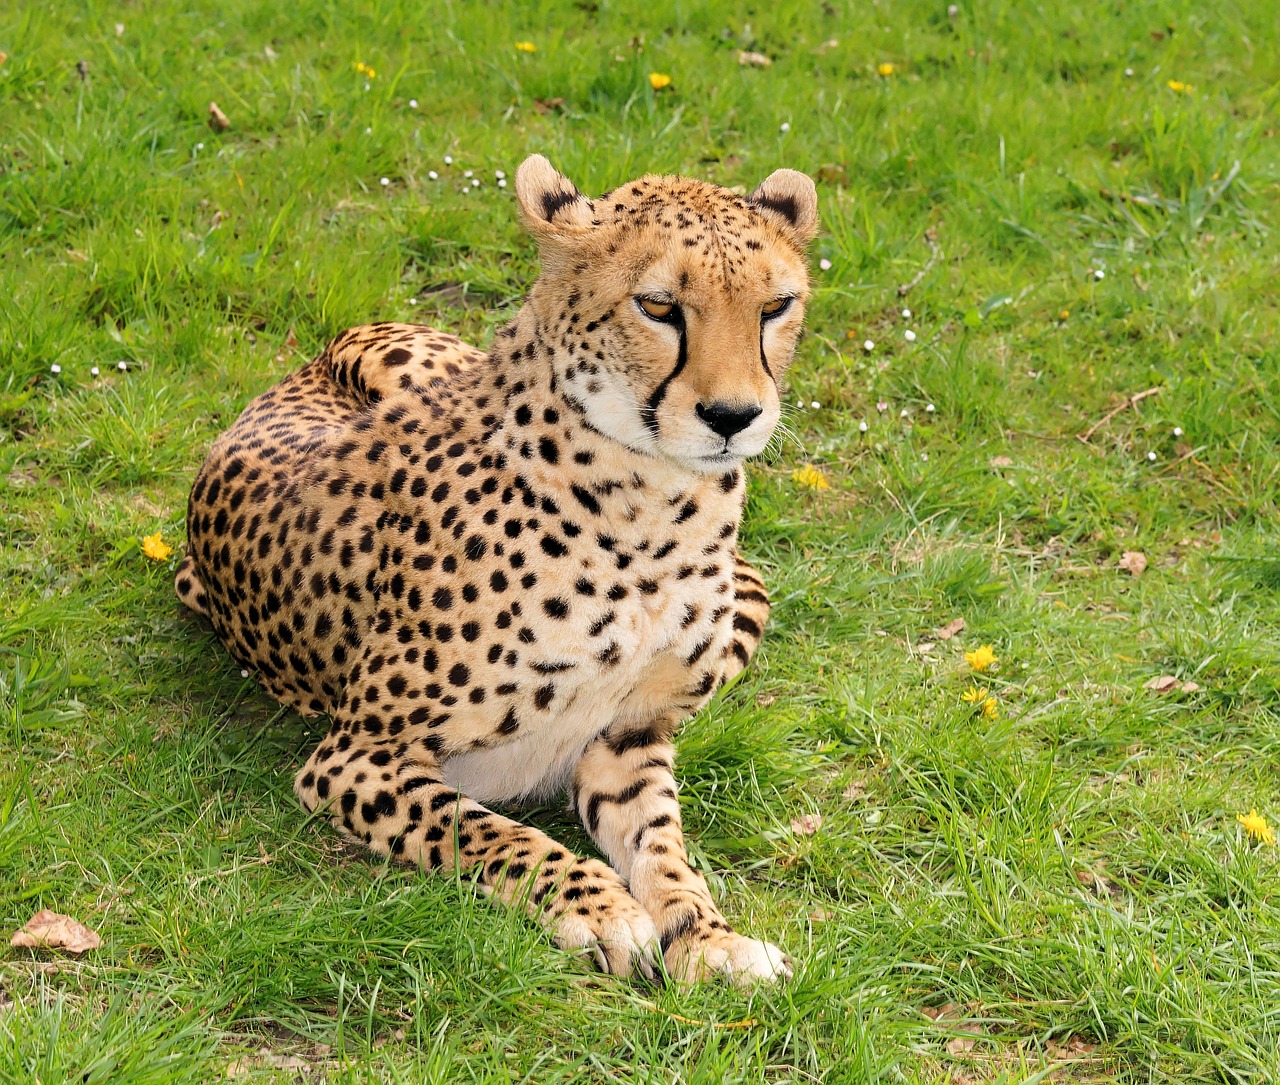 wildcat large wild cat cheetah free photo